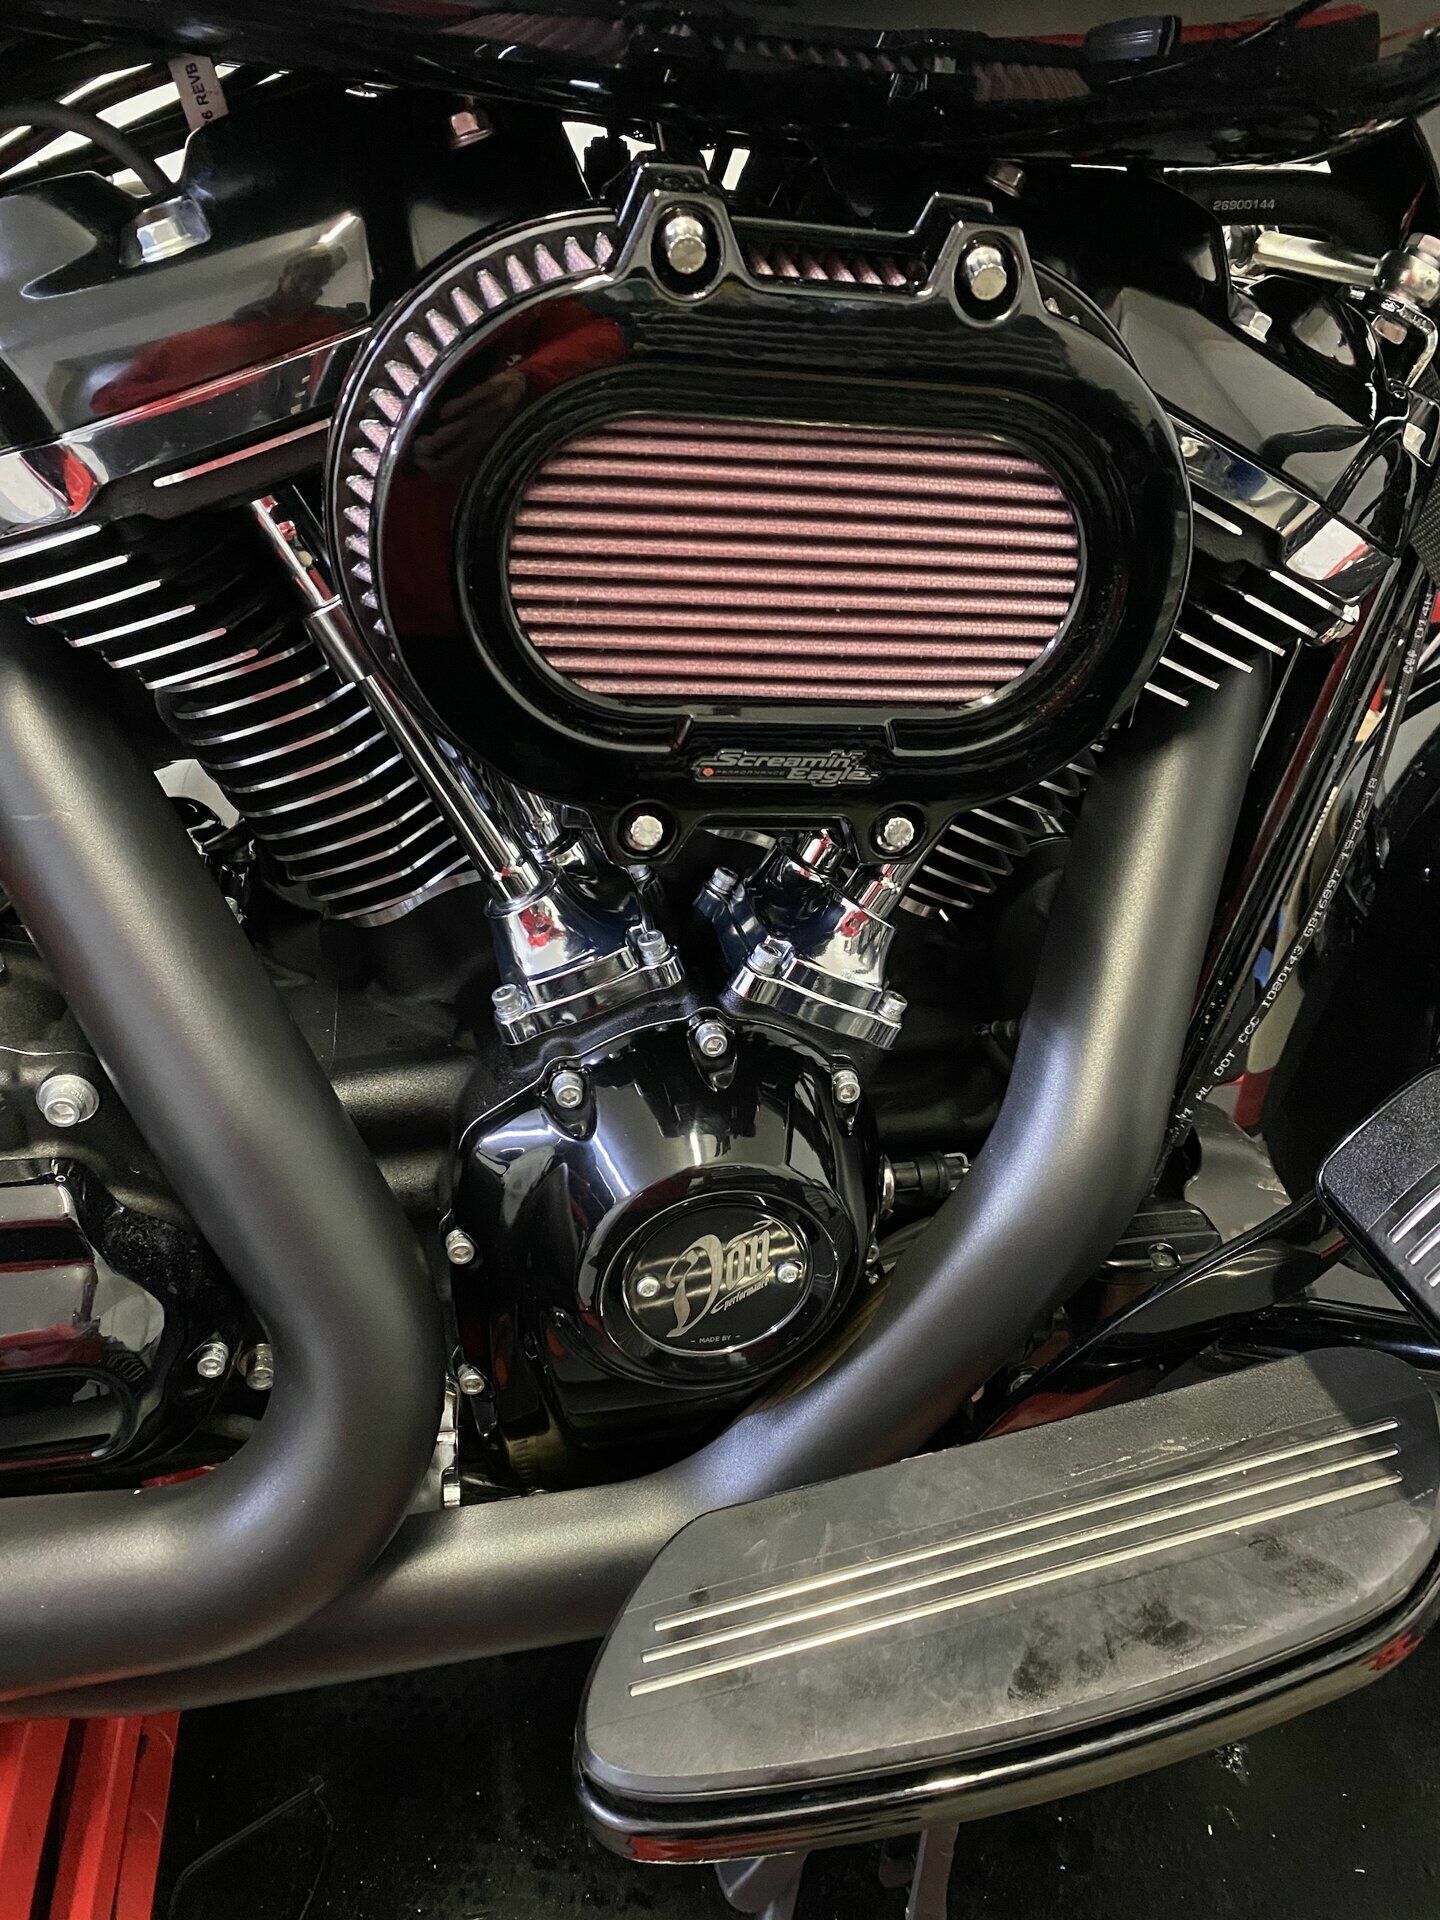 Öltemperaturanzeige Harley Davidson digital Koso kaufen